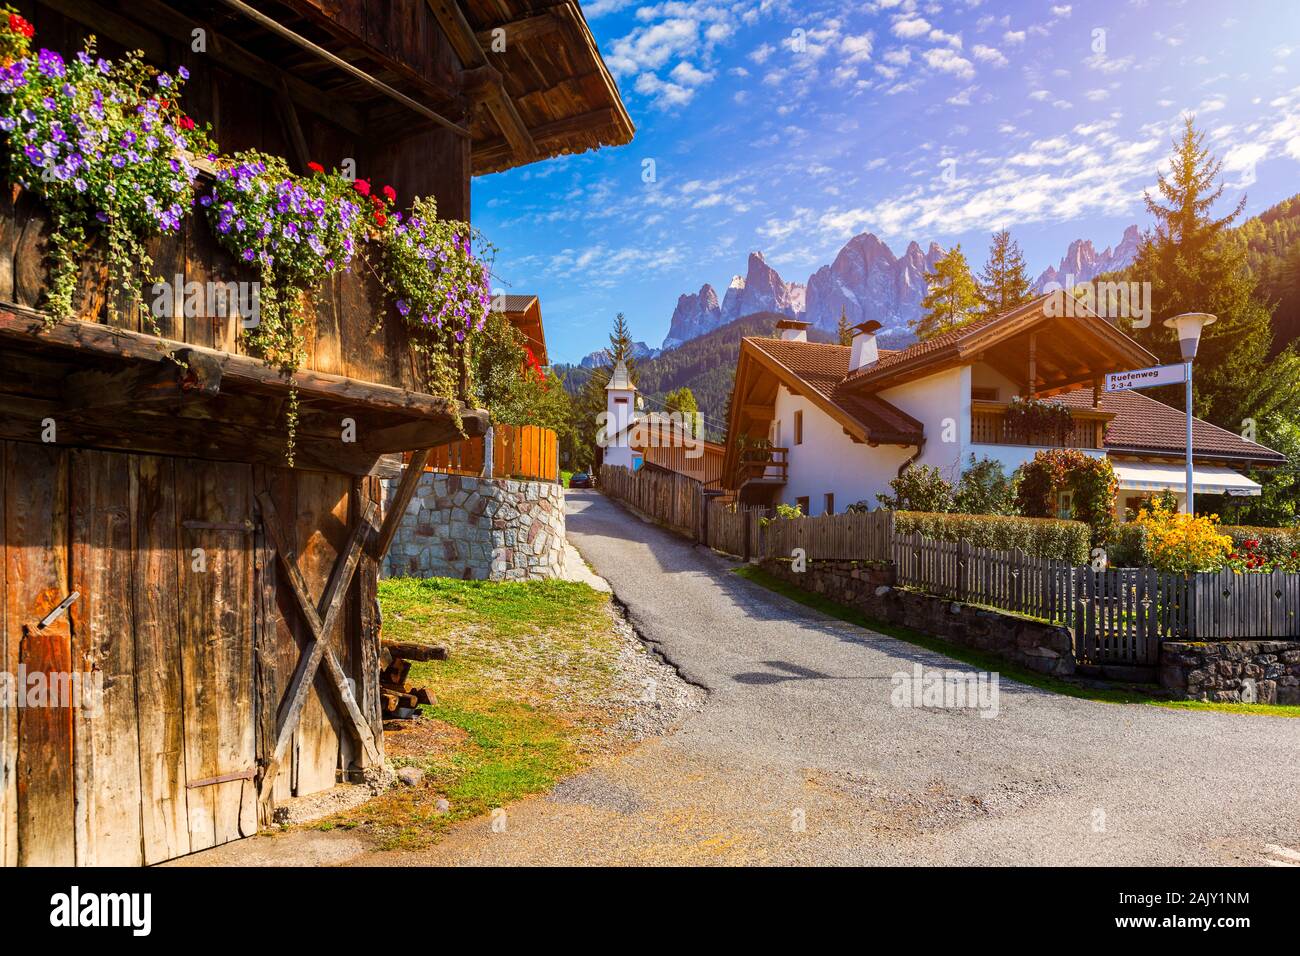 Blick auf die Straße von Santa Maddalena (Santa Magdalena) Dorf, Val di Funes Tal, Trentino Alto Adige, Südtirol, Italien, Europa. Santa Maddalena Stockfoto